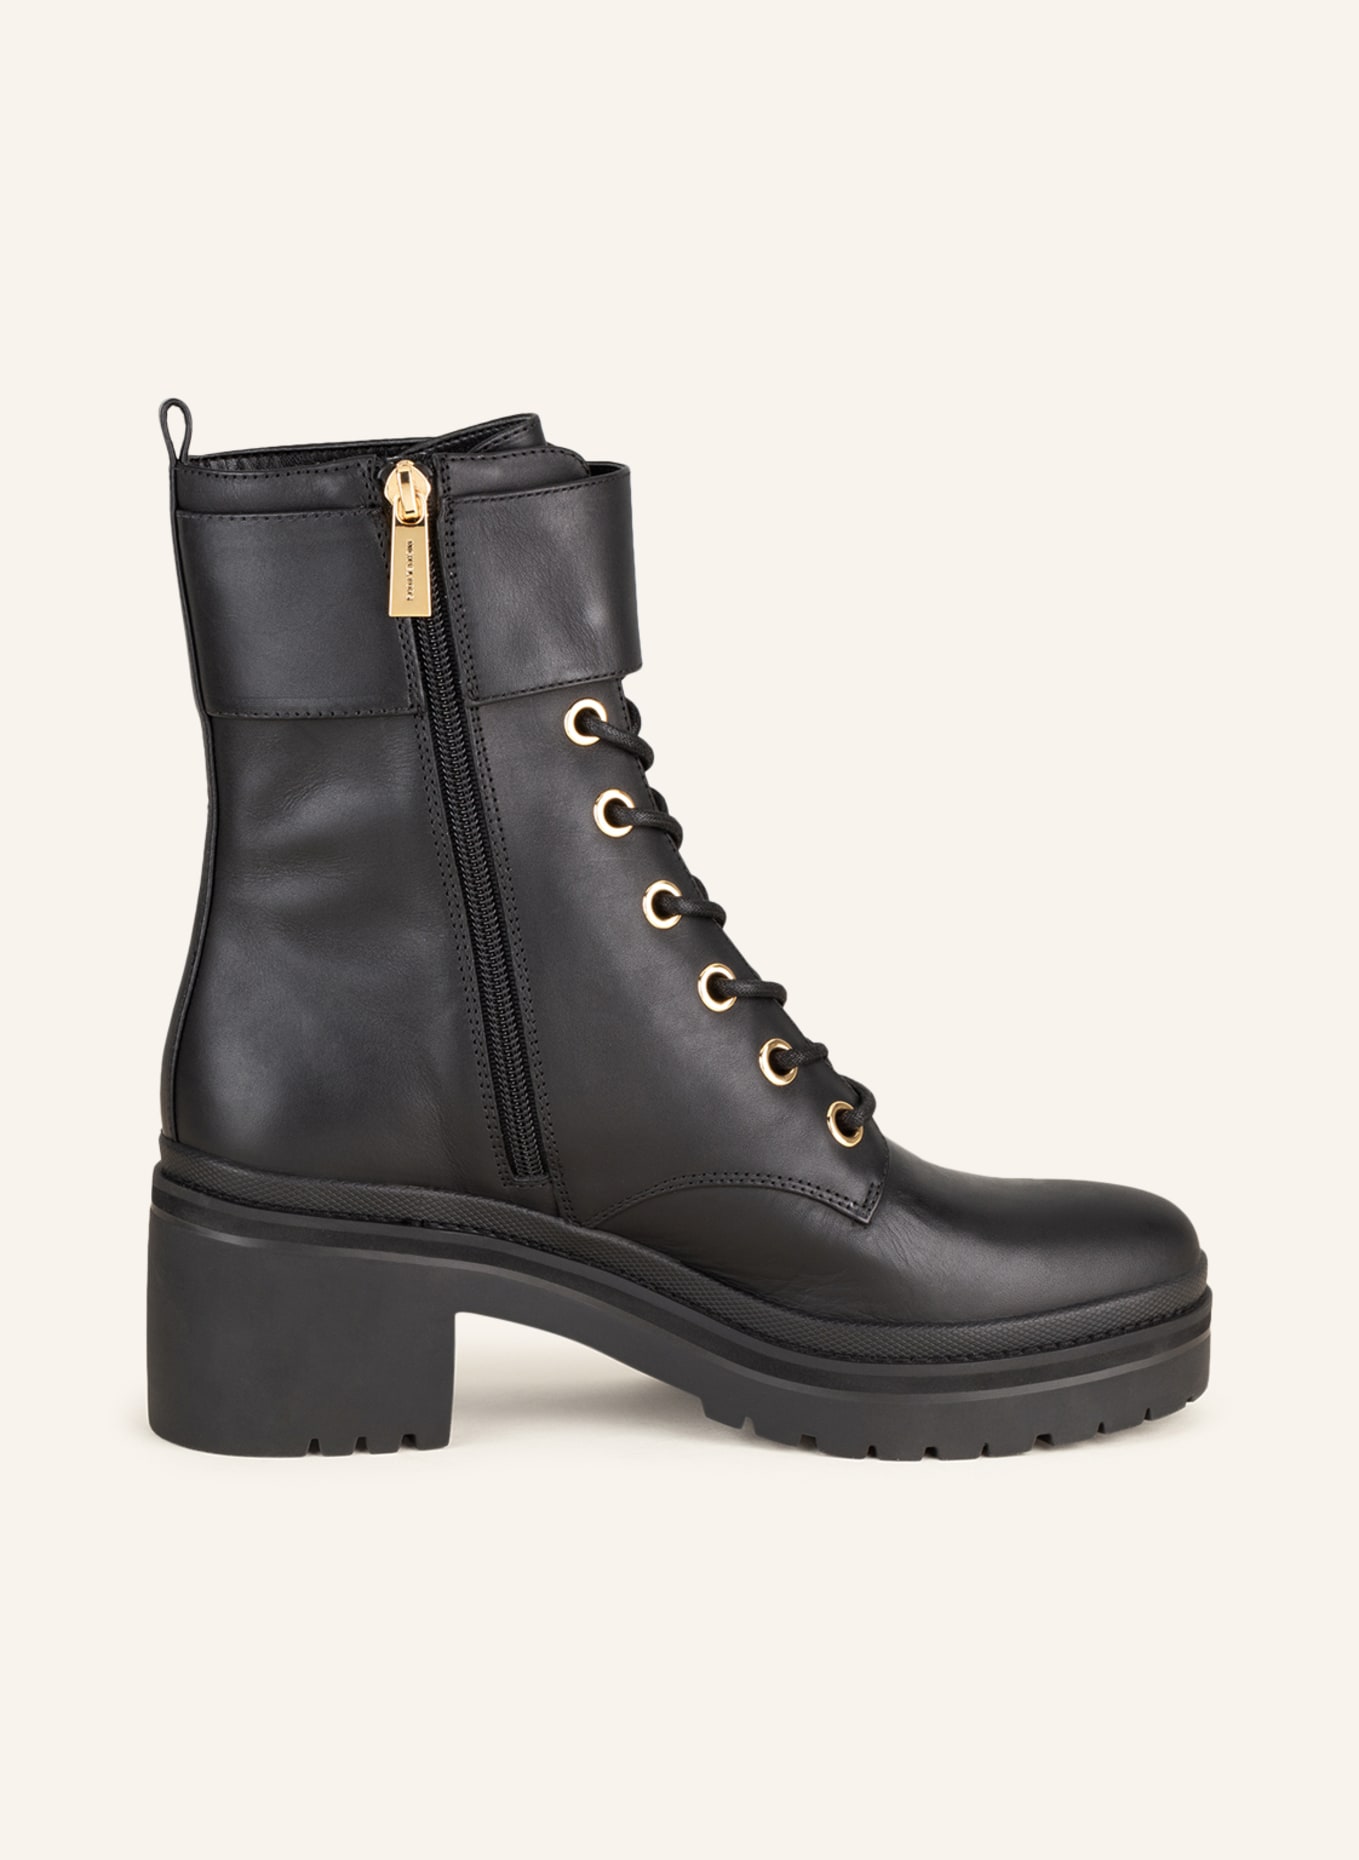 MICHAEL KORS Lace-up boots, Color: BLACK (Image 5)